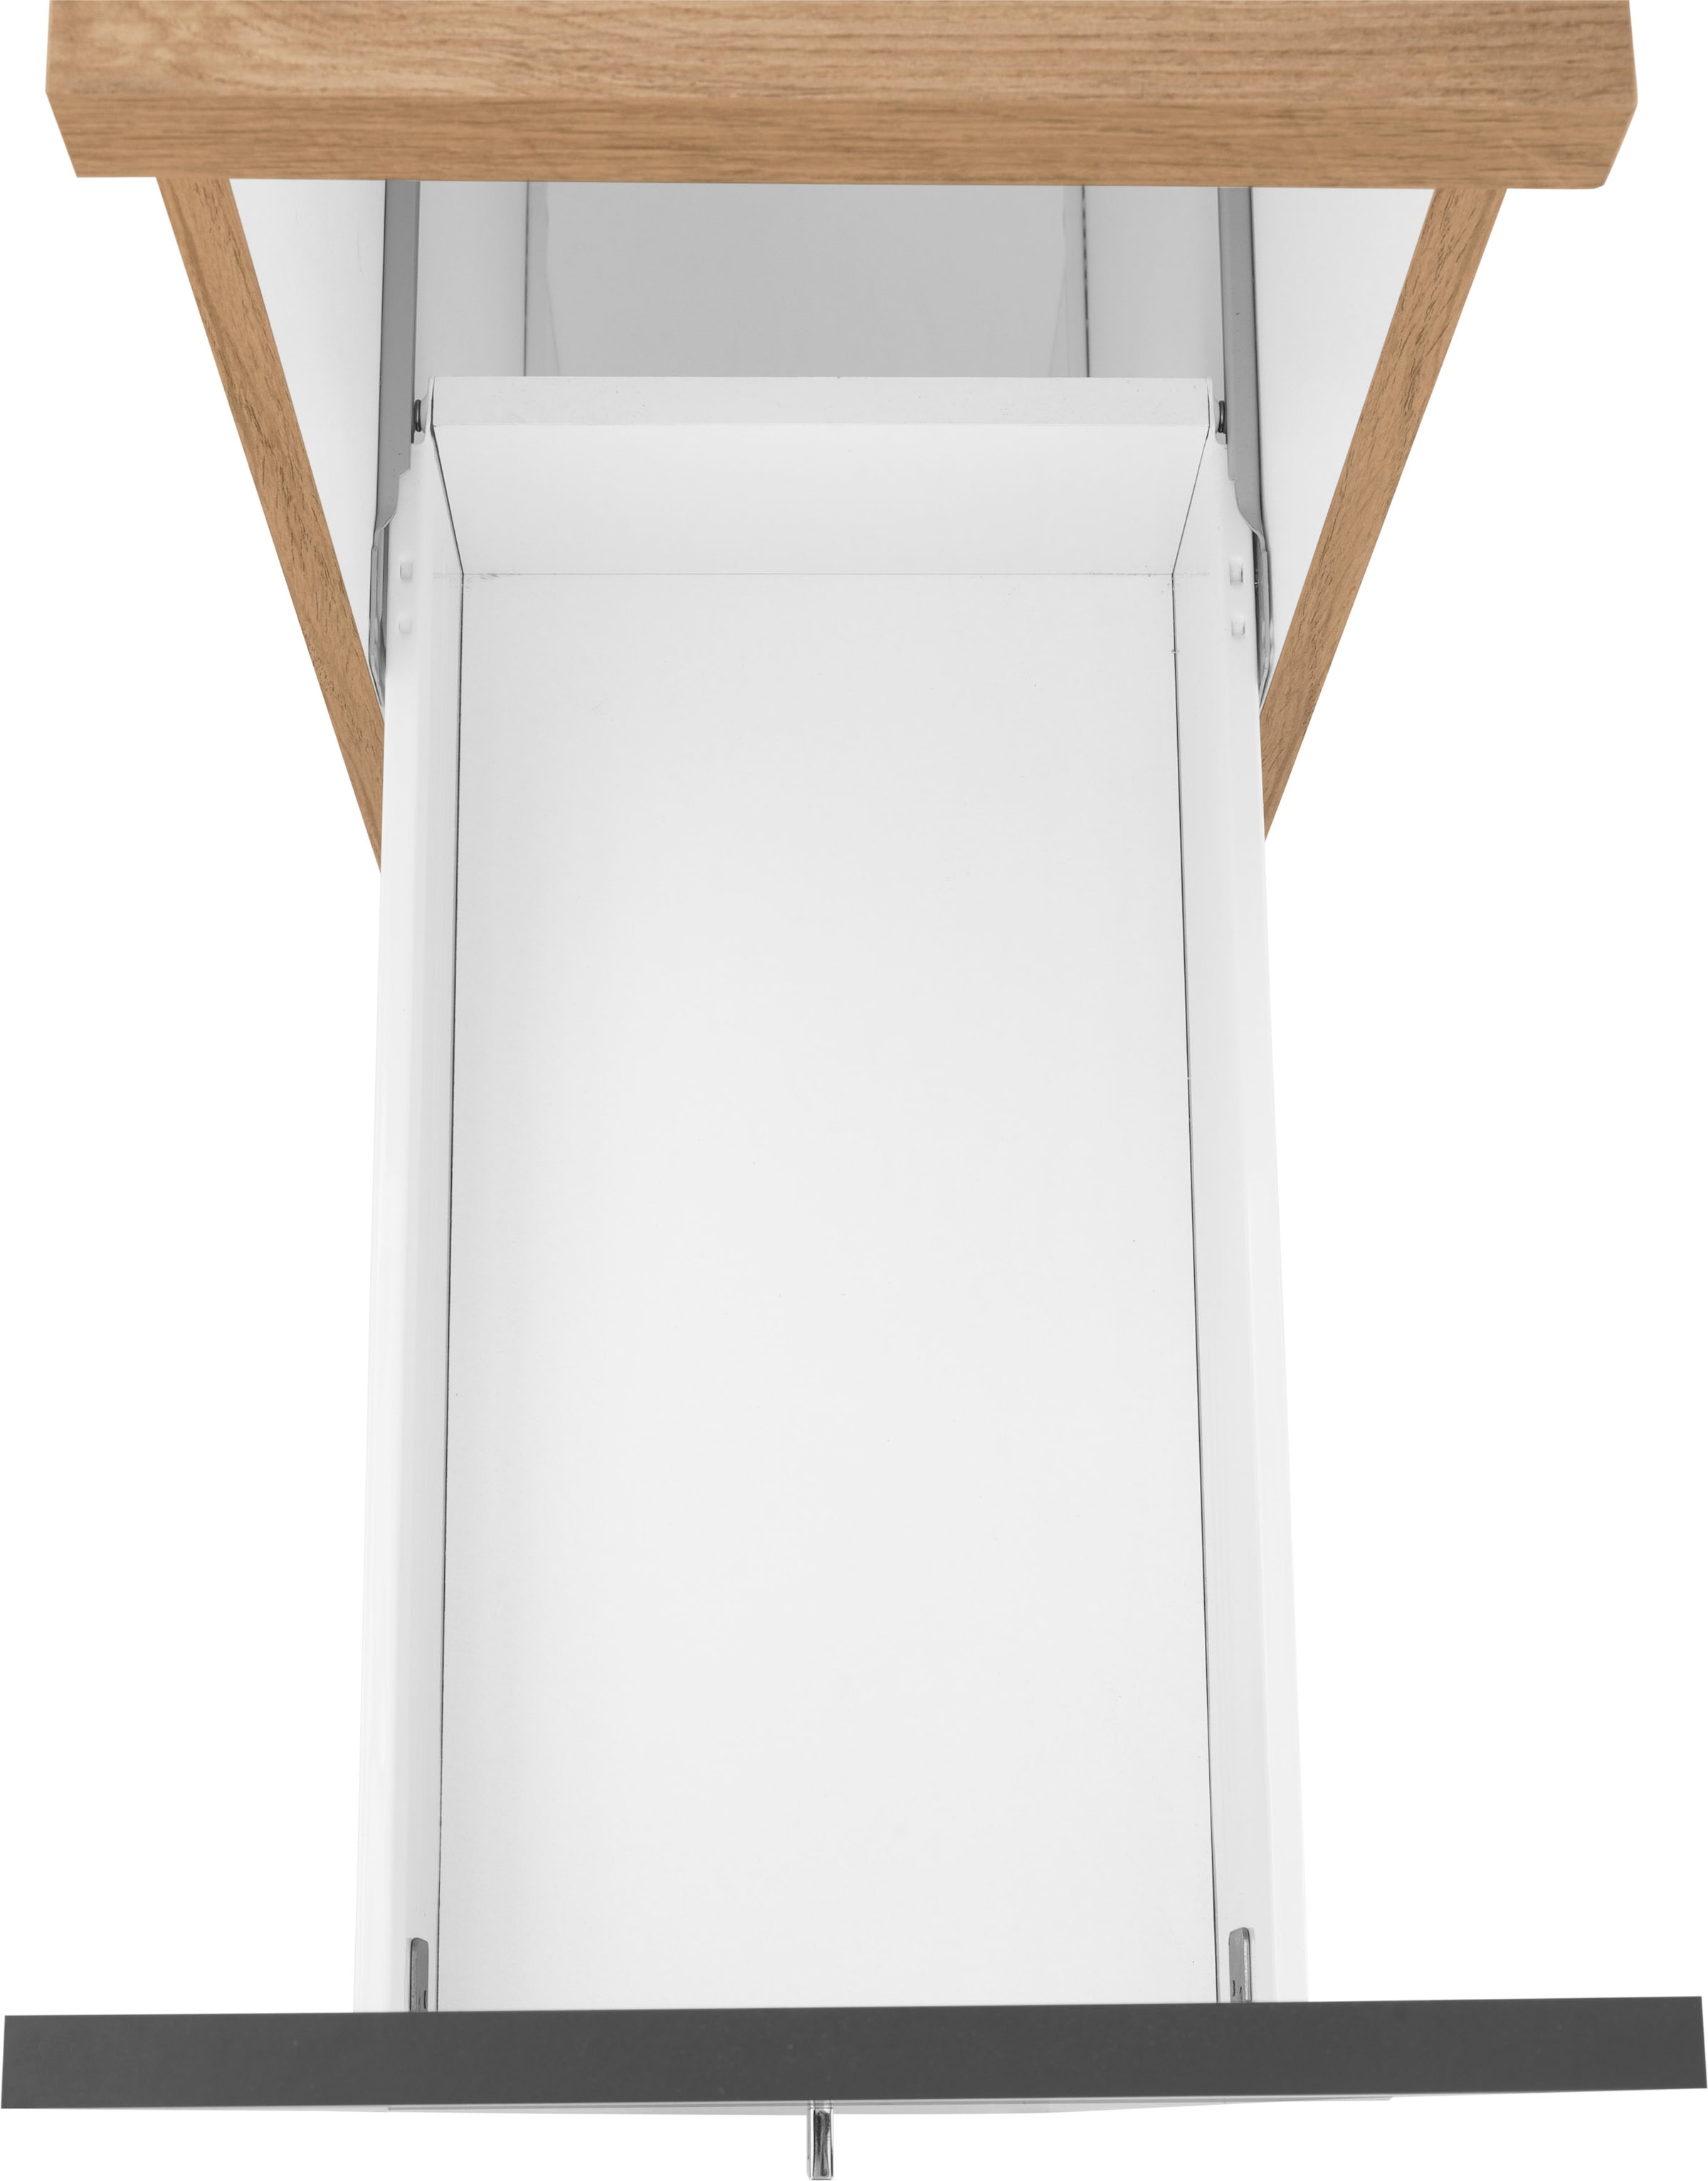 HELD MÖBEL Apothekerschrank »Colmar«, 30 cm breit, 165 cm hoch, mit 3 Ablagen, mit Metallgriff